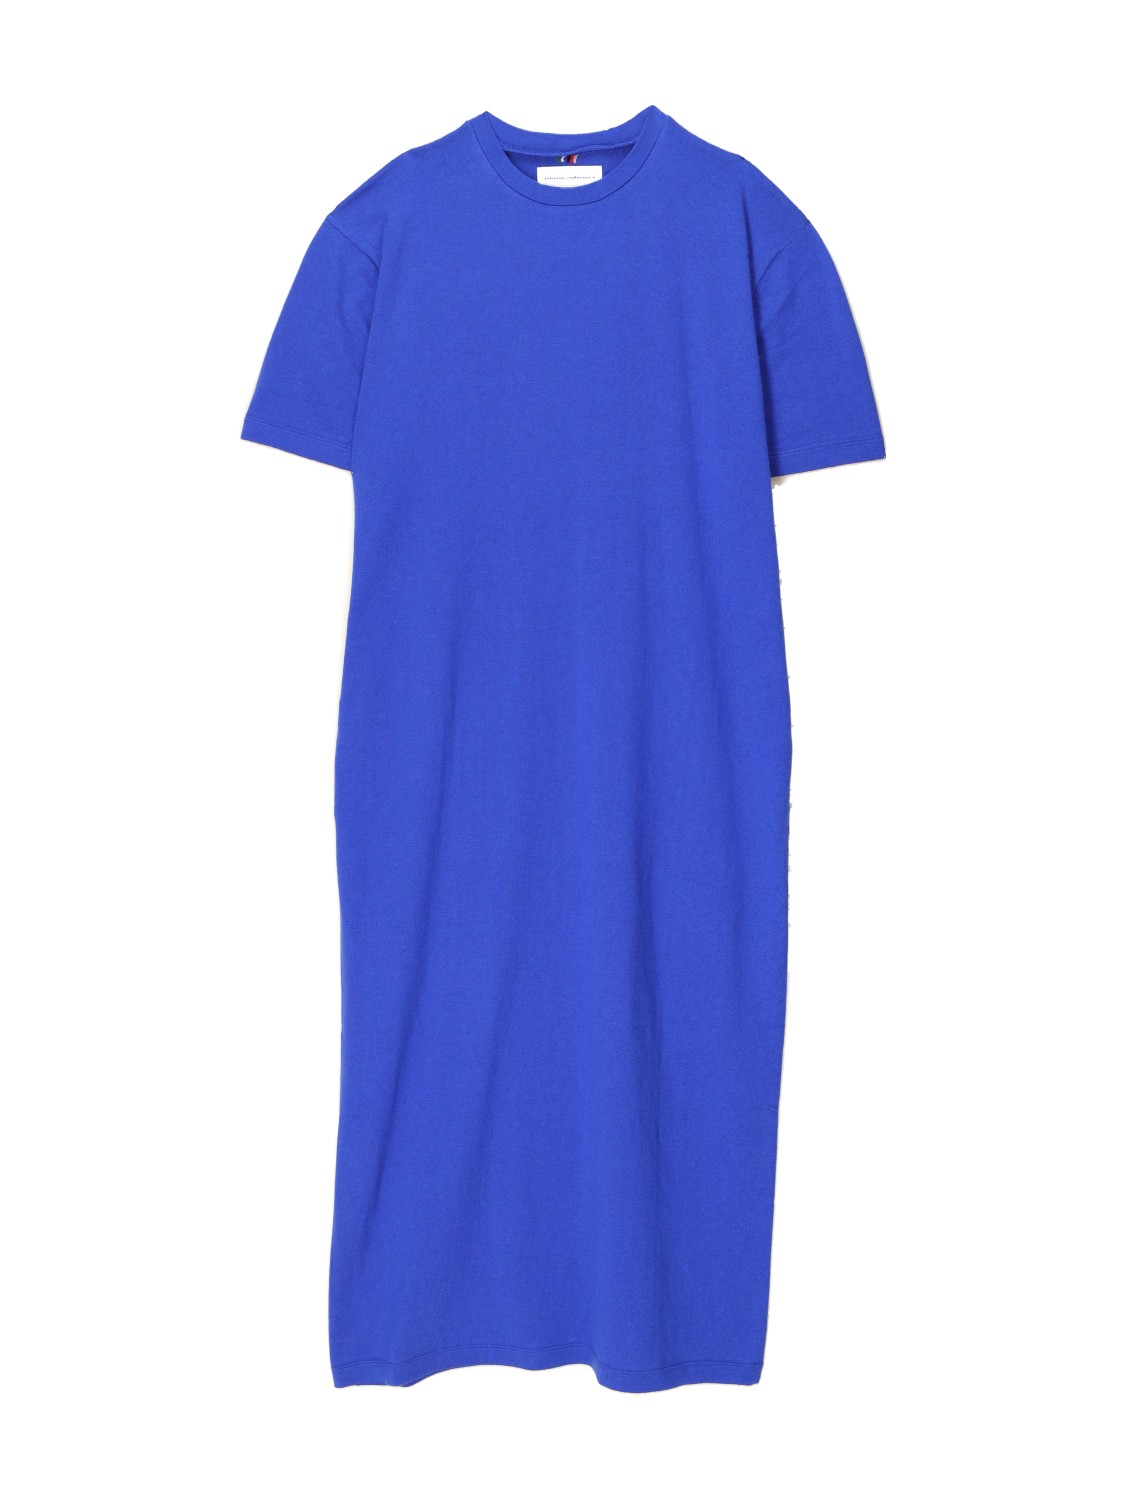 Extreme Cashmere N°321 Kris - Abito T-shirt oversize in misto cashmere e cotone  blu Taglia unica